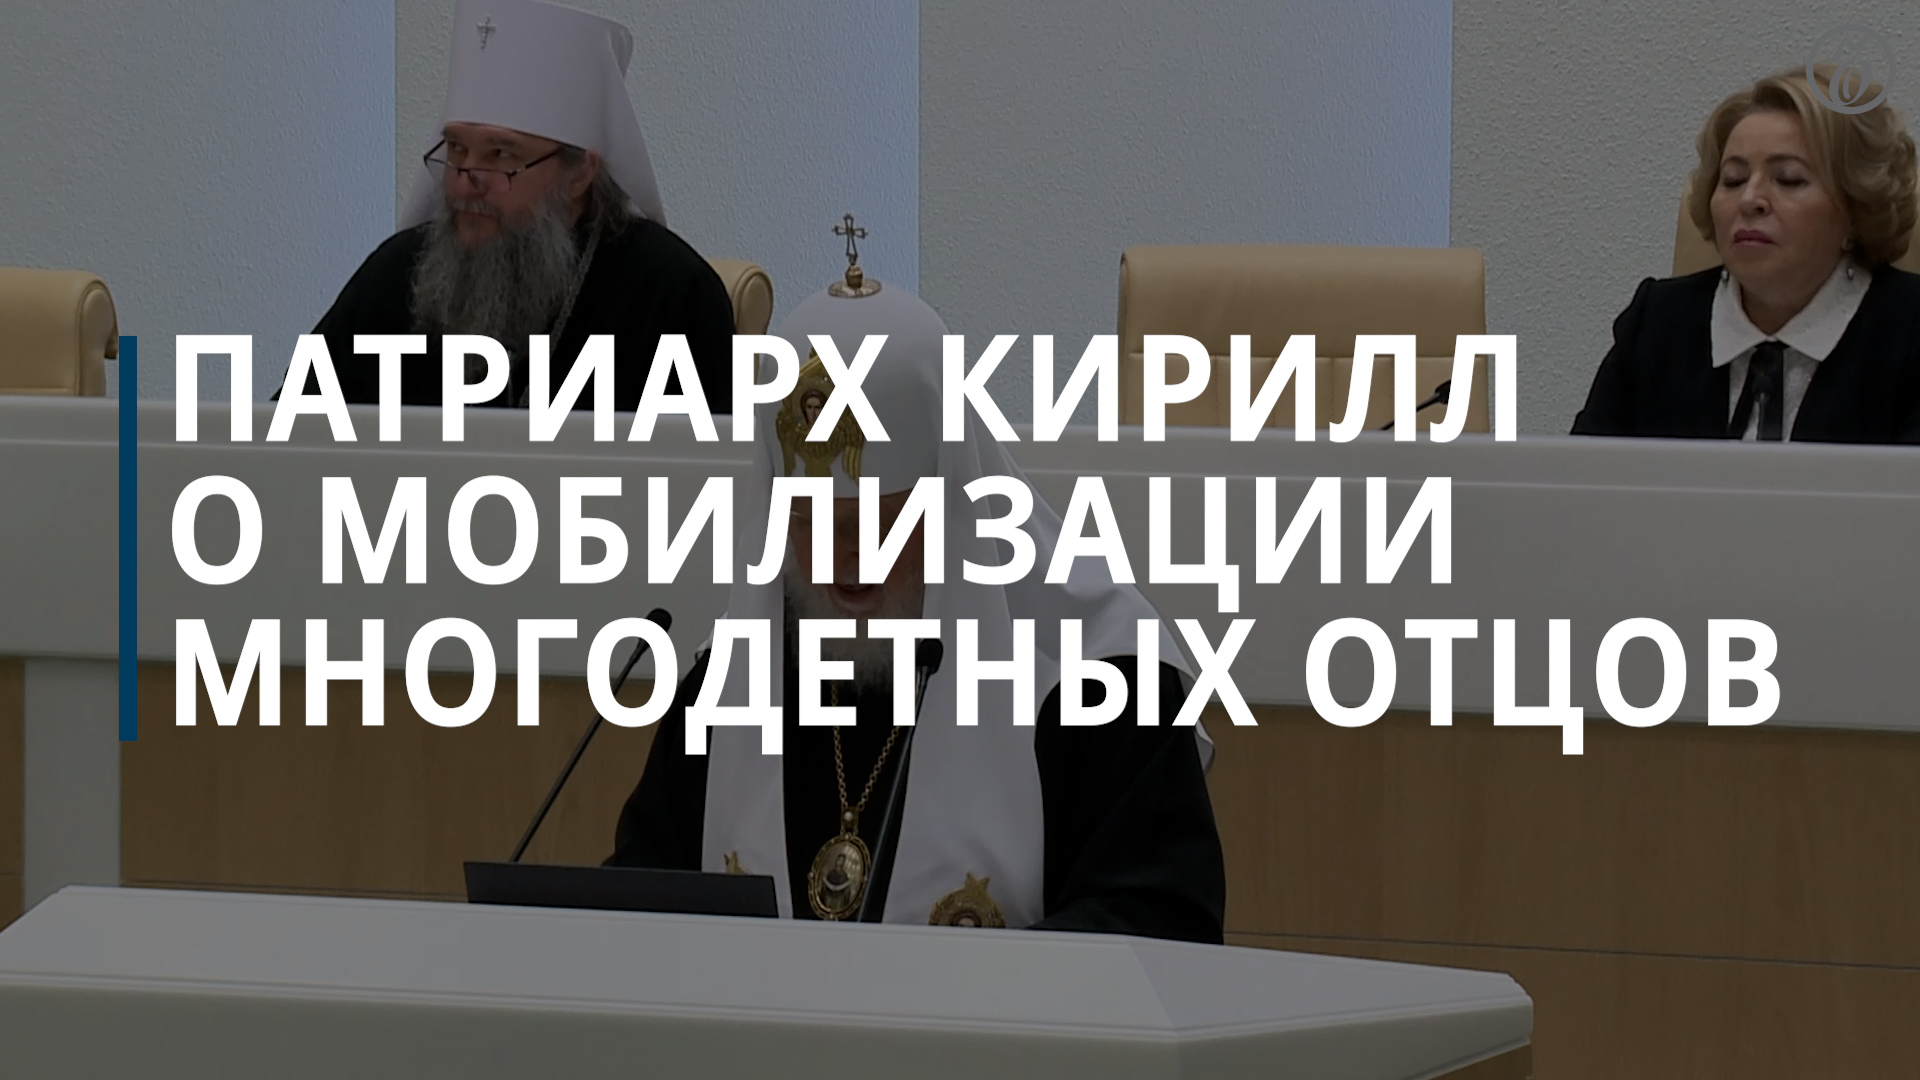 Патриарх Кирилл призвал запретить мобилизацию многодетных отцов в мирное время — Коммерсантъ